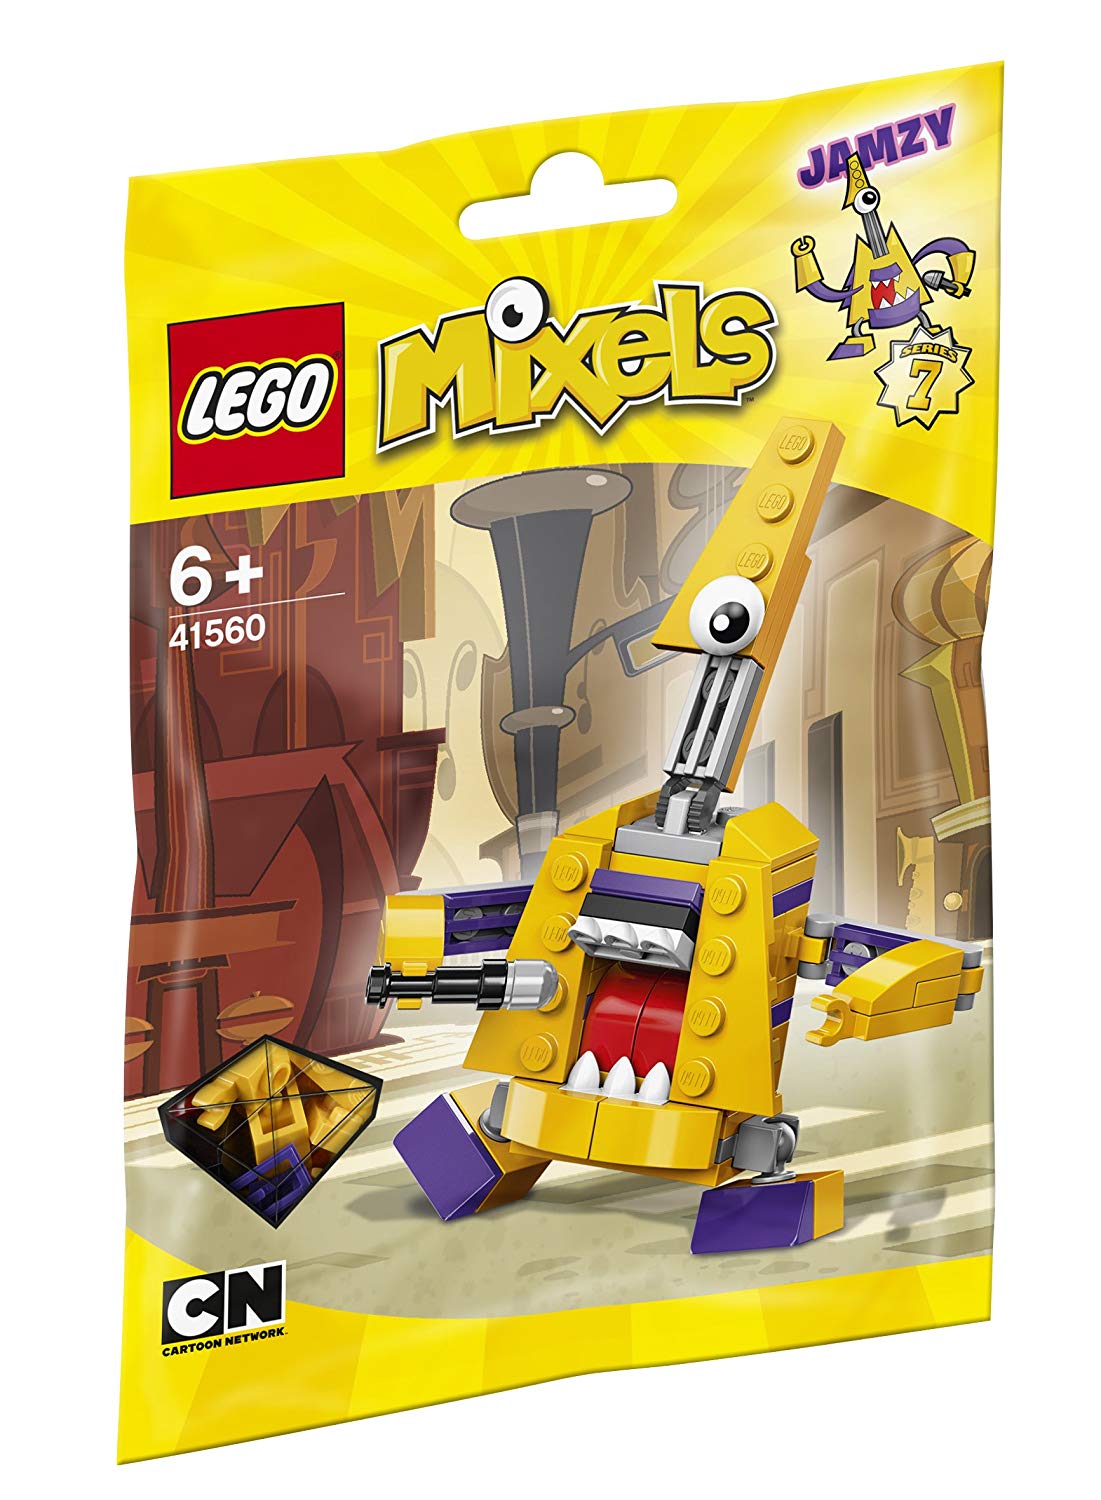 Lego Mixels Jamzy